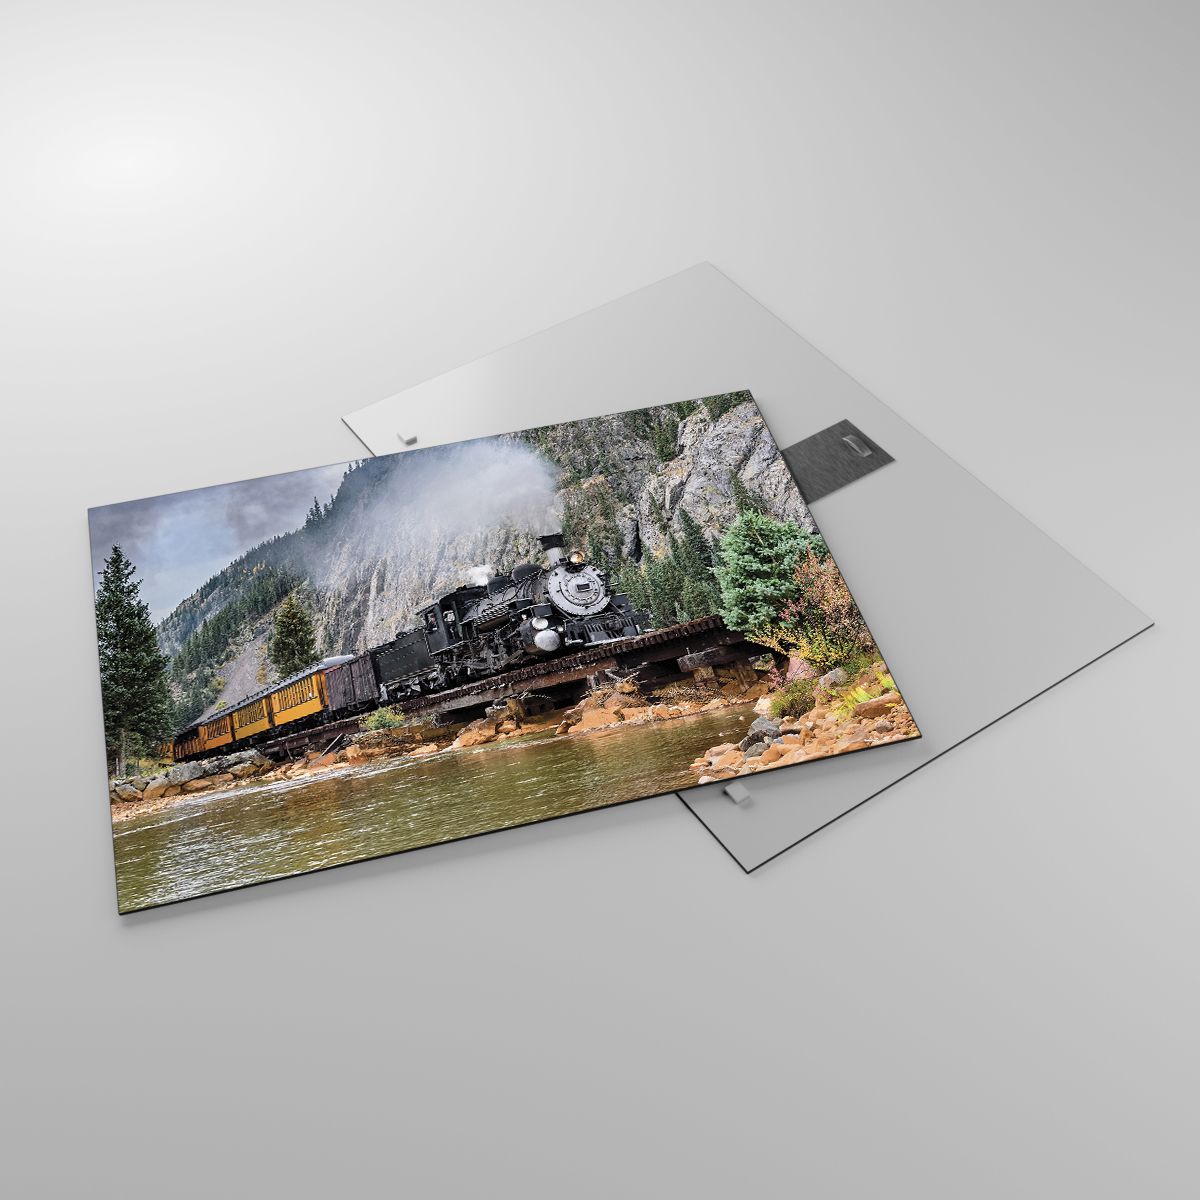 Glasbild Eisenbahn Auf Schienen, Glasbild Dampflokomotive, Glasbild Landschaft, Glasbild Jahrgang, Glasbild Berge